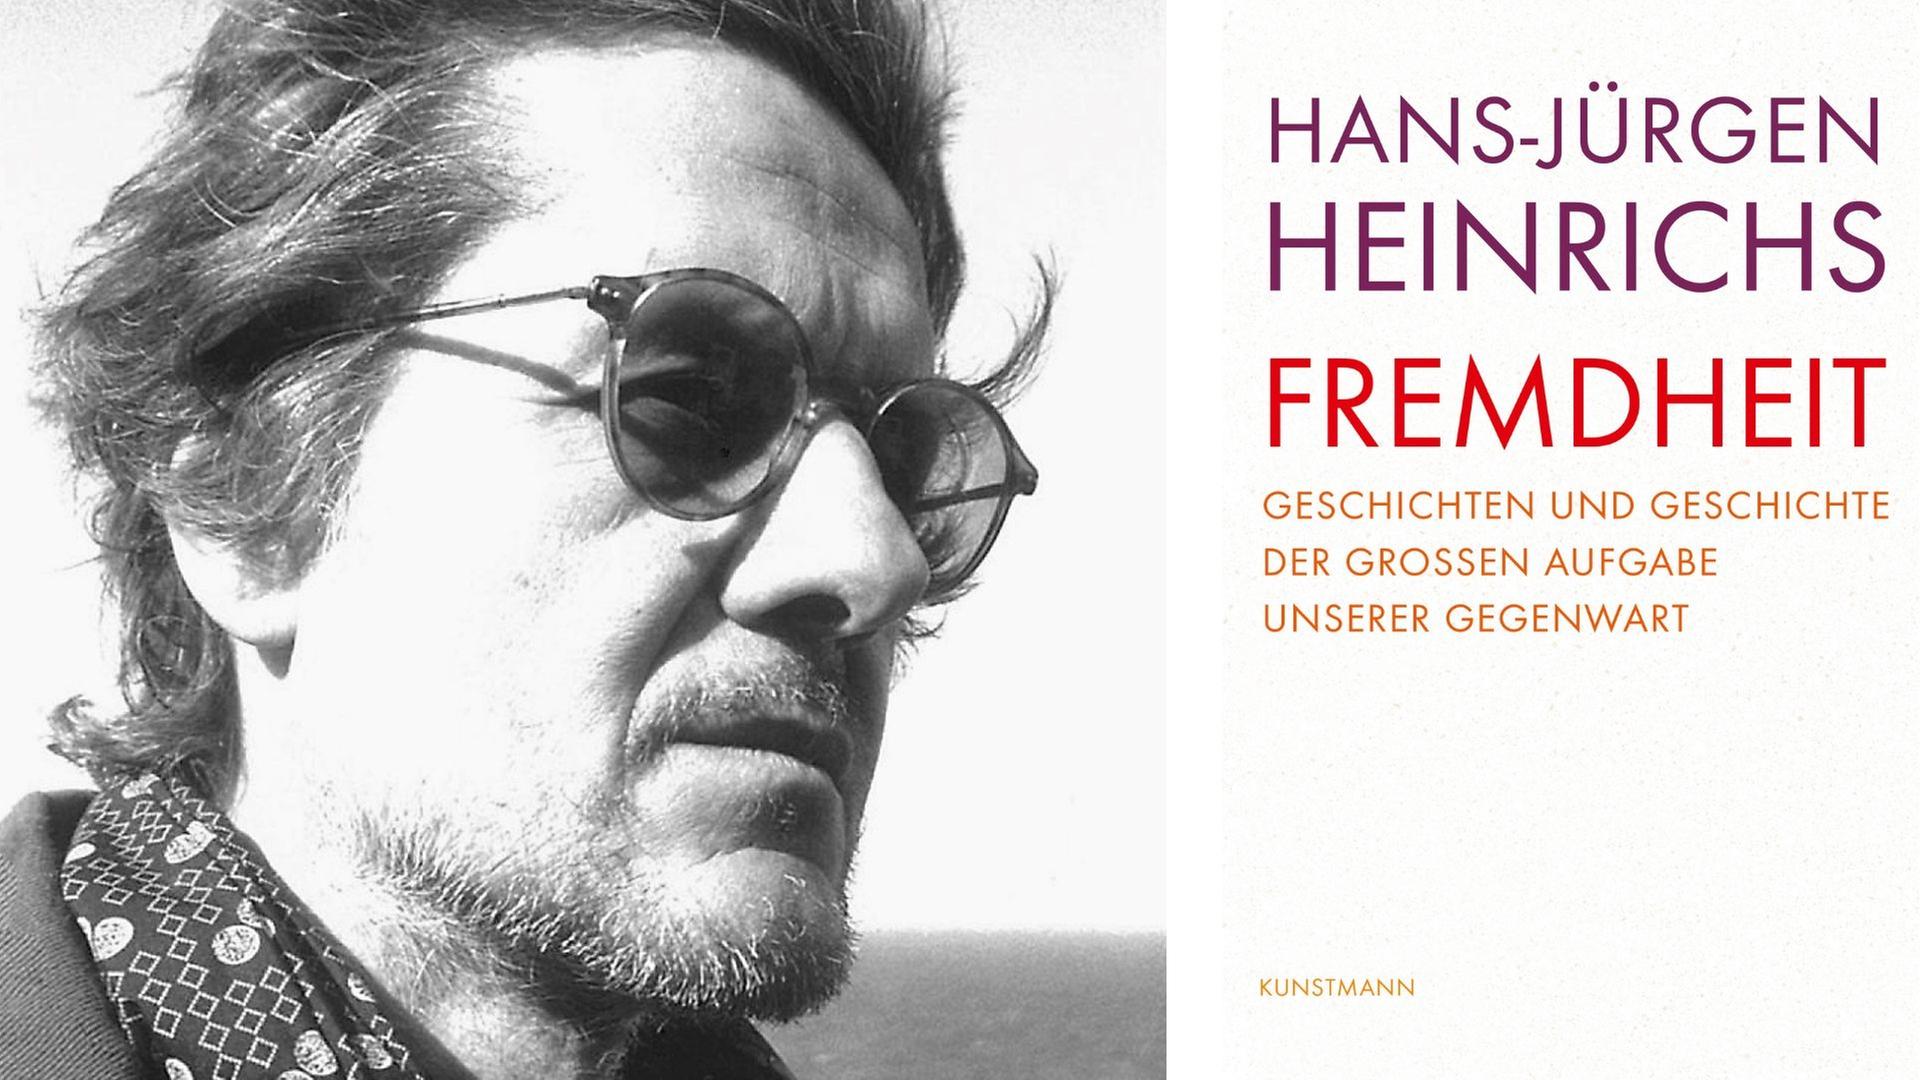 Zu sehen ist der Autor Hans-Jürgen Heinrichs und das Cover seines Buches "Fremdheit. Geschichten und Geschichte der großen Aufgabe unserer Gegenwart."